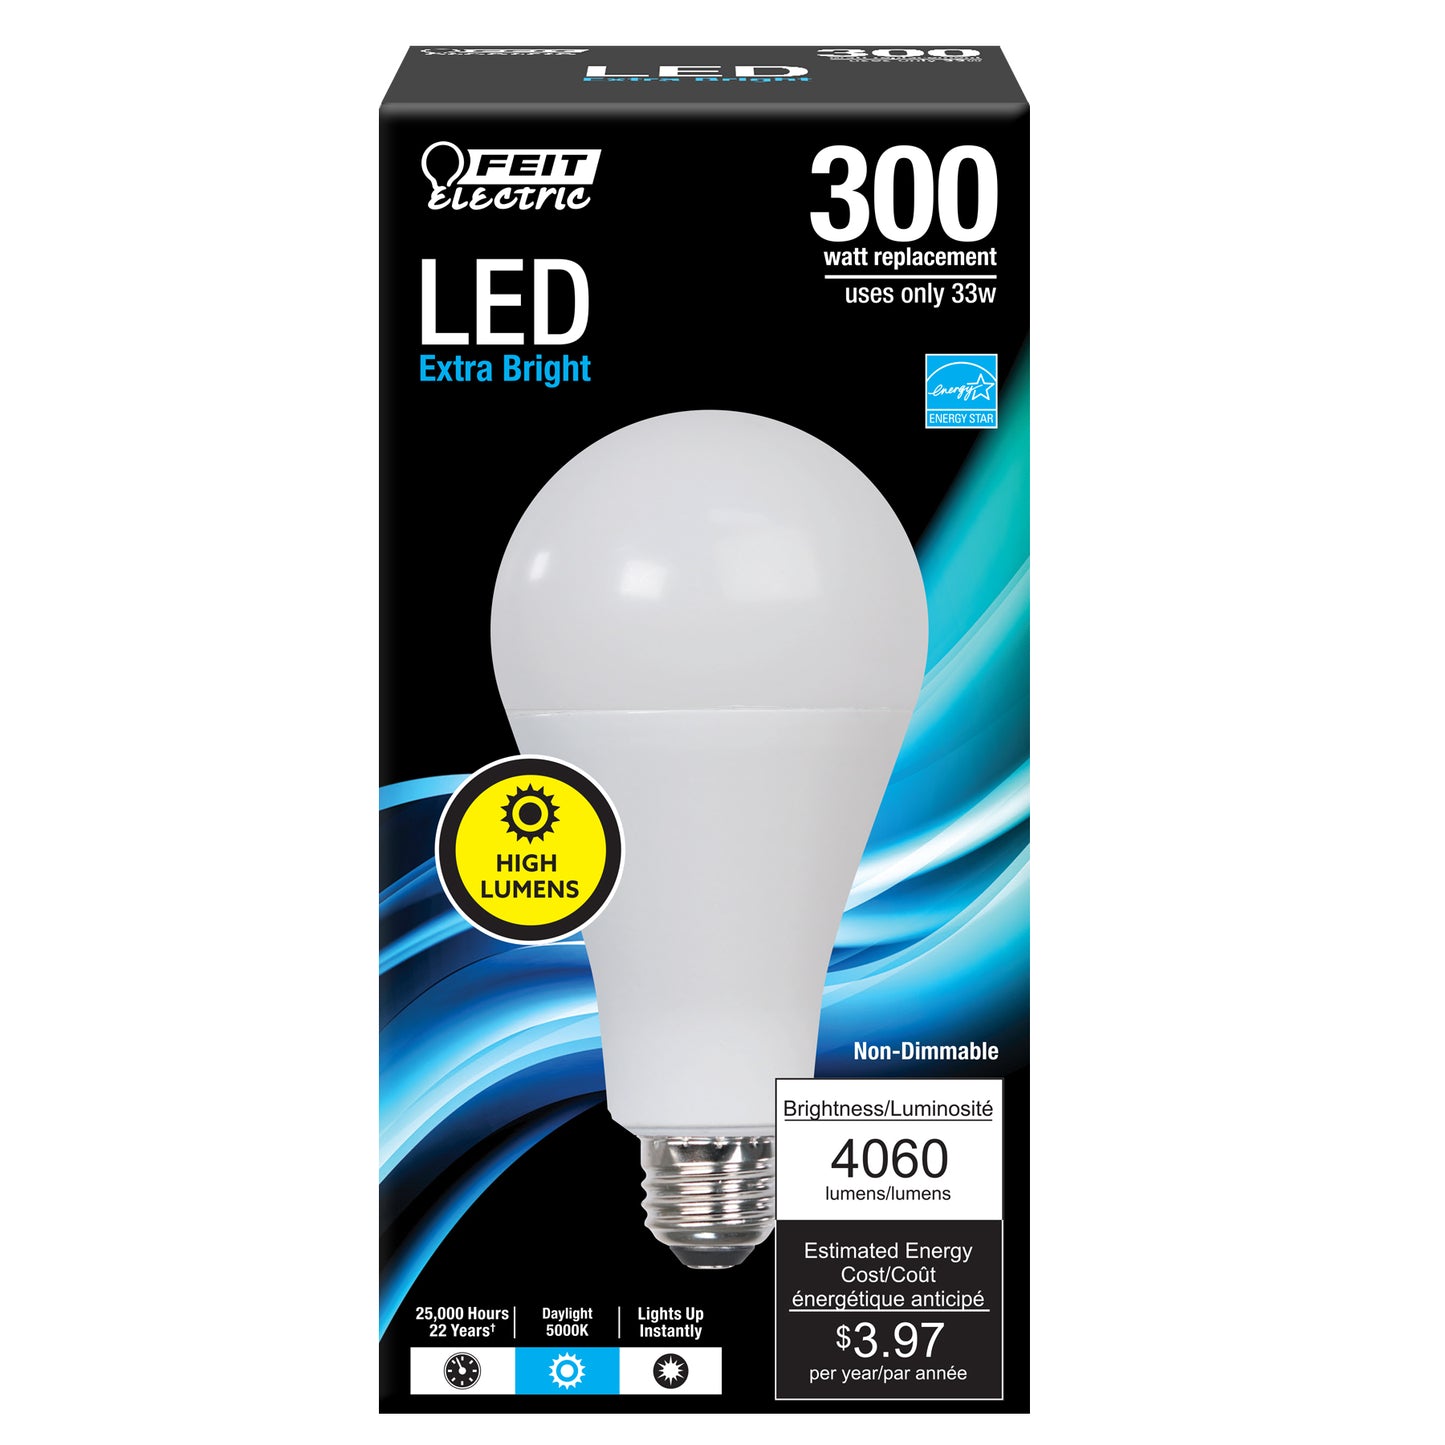 Feit Electric OM300/850/LED high-lumen LED light bulb. This 5000K Daylight bulb